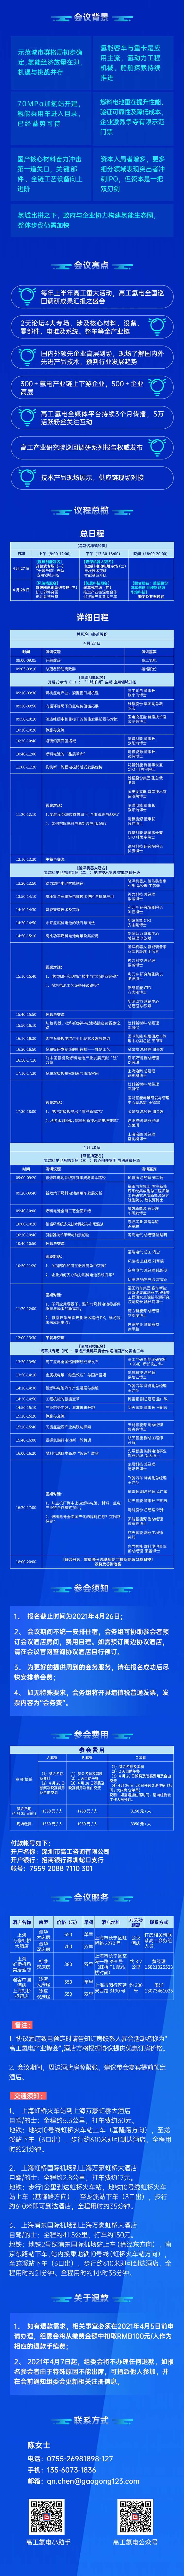 2021高工氢燃料电池产业峰会(上海)专题.png